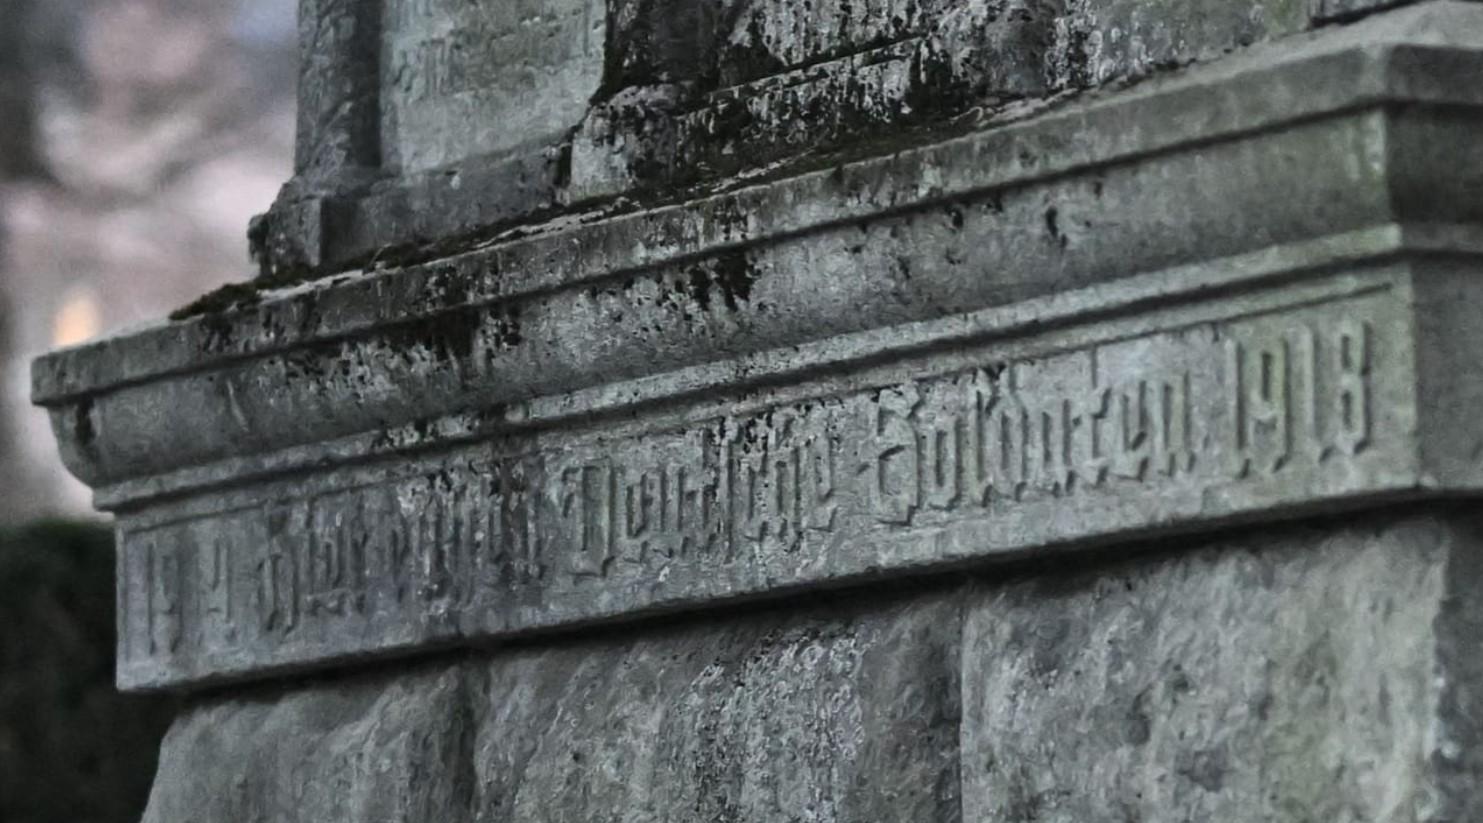 "Les soldats allemands reposent ici". Inscription sur le mémorial nazi de Coire, dans une police développée sous le 3ème Reich. [KEYSTONE]